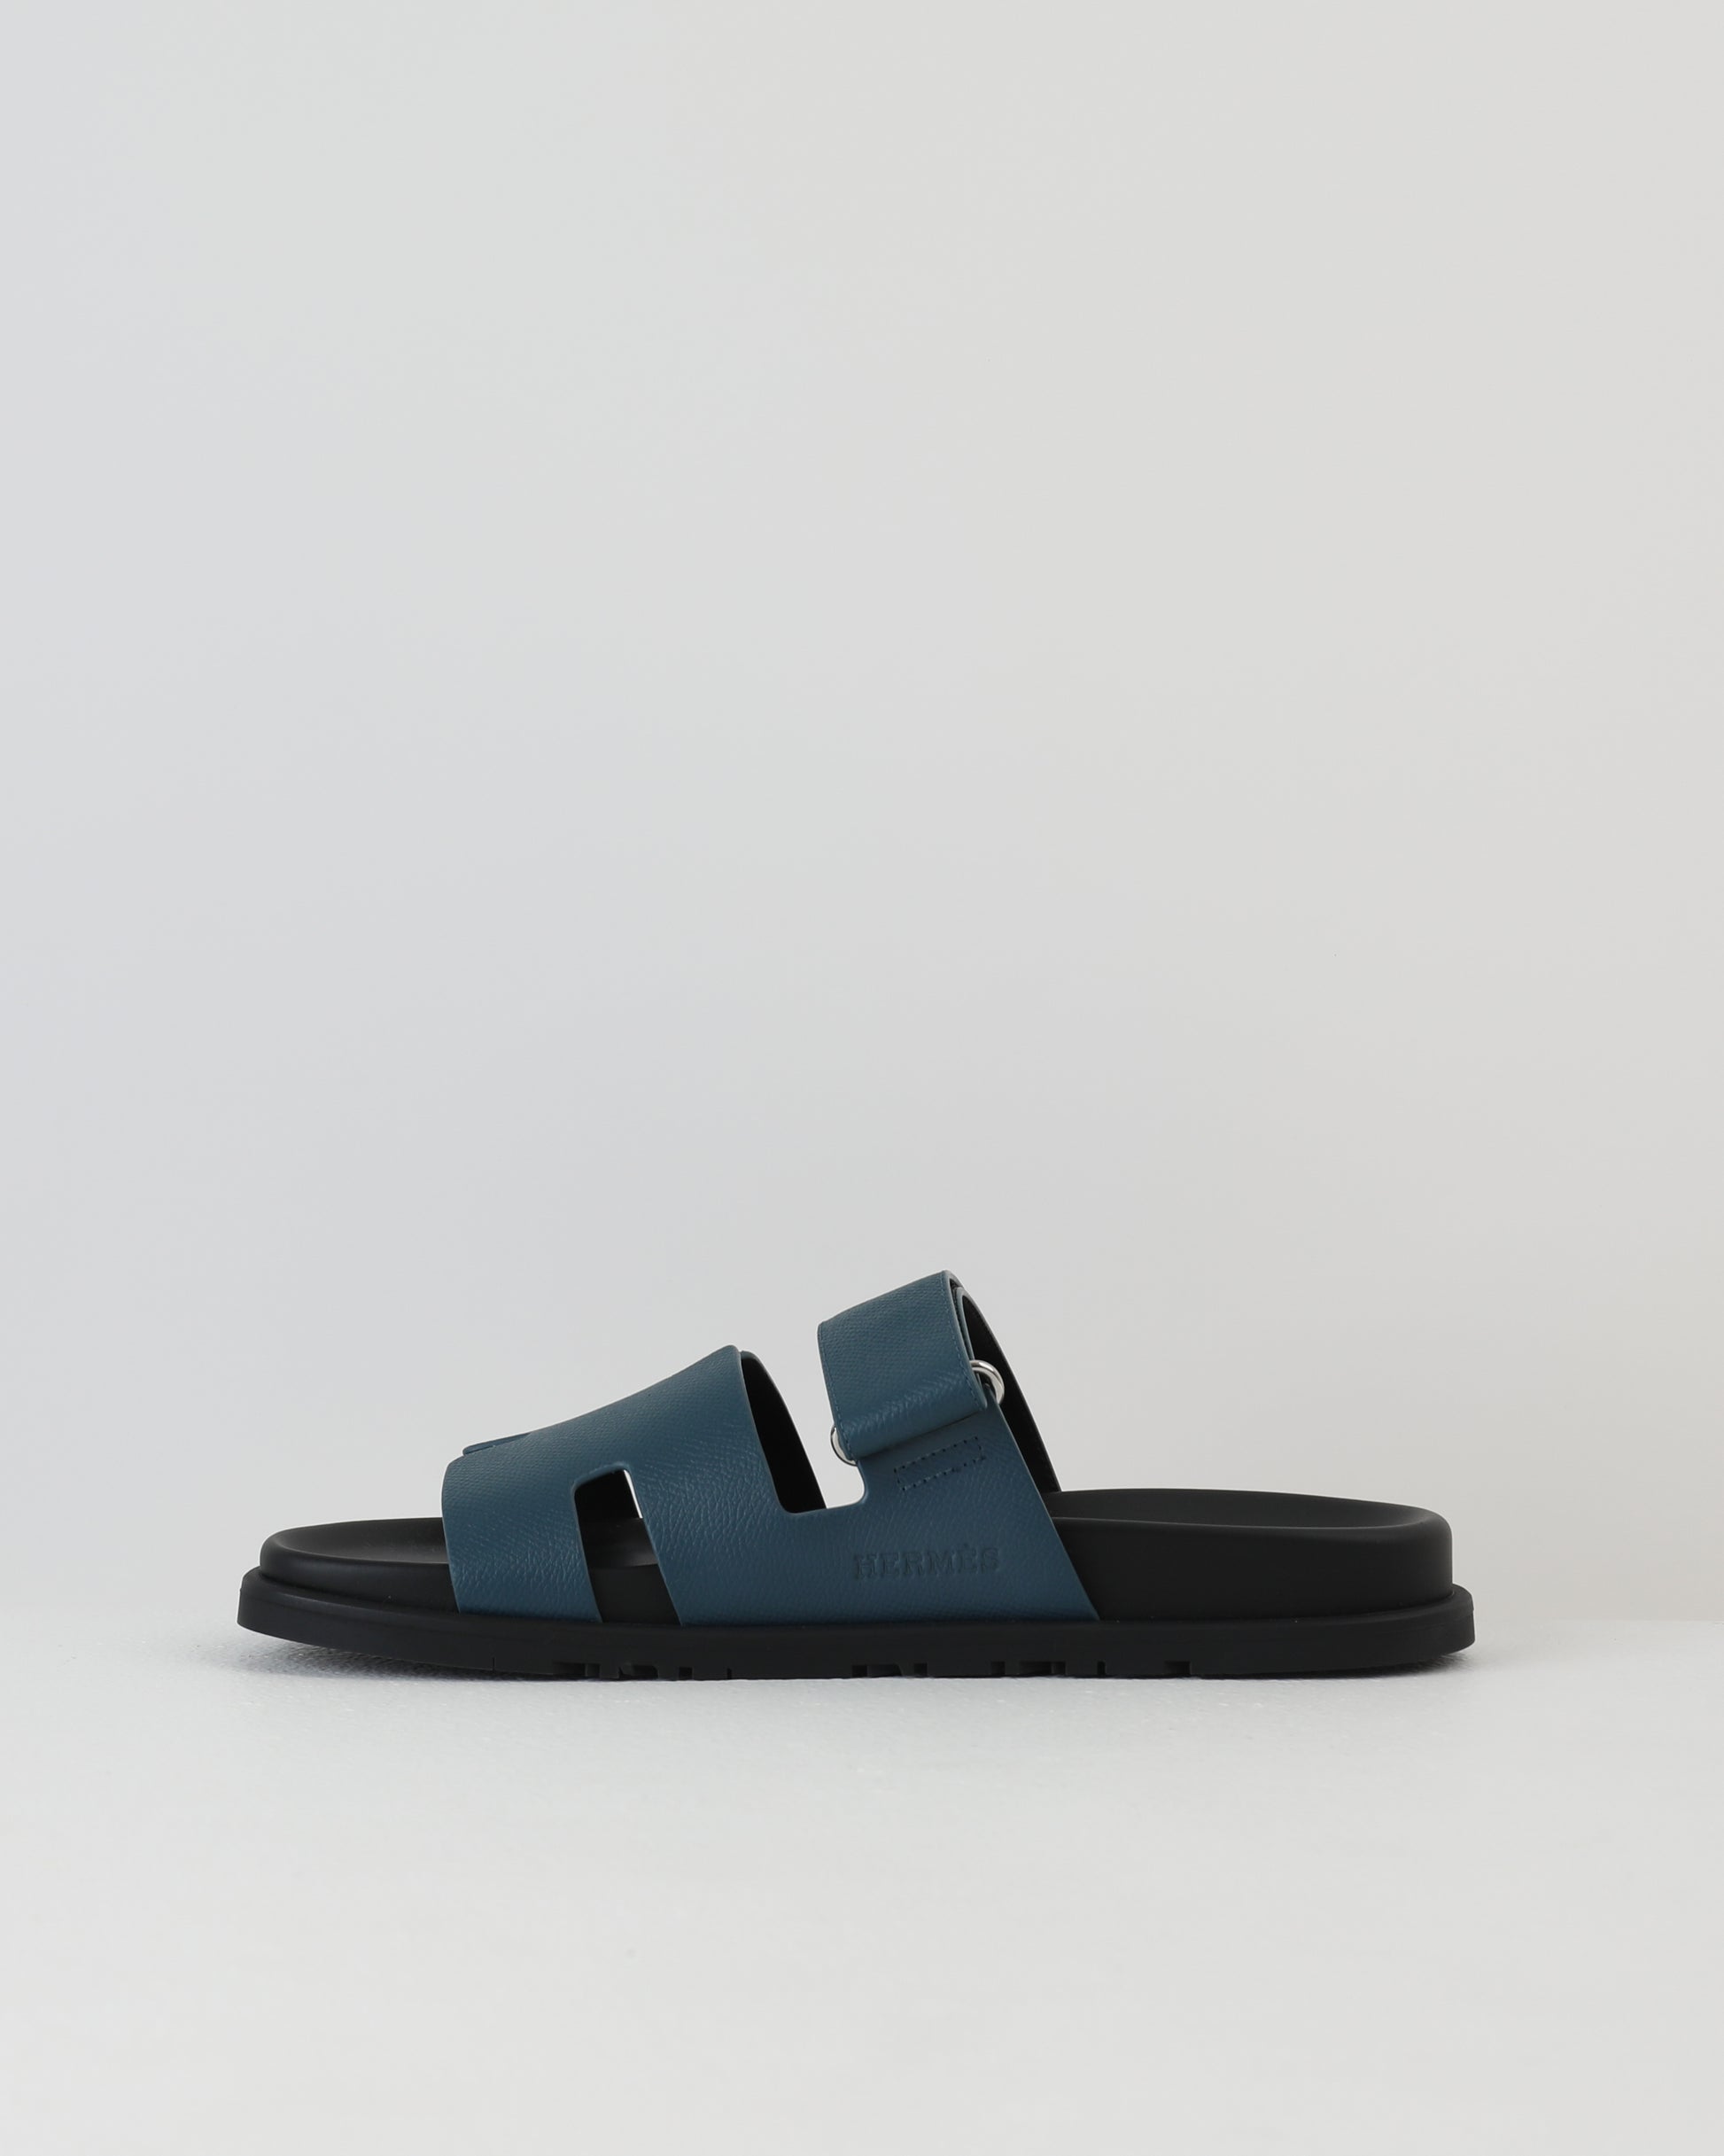 Hermès Chypre Sandals (Bleu Celeste) – The Luxury Shopper